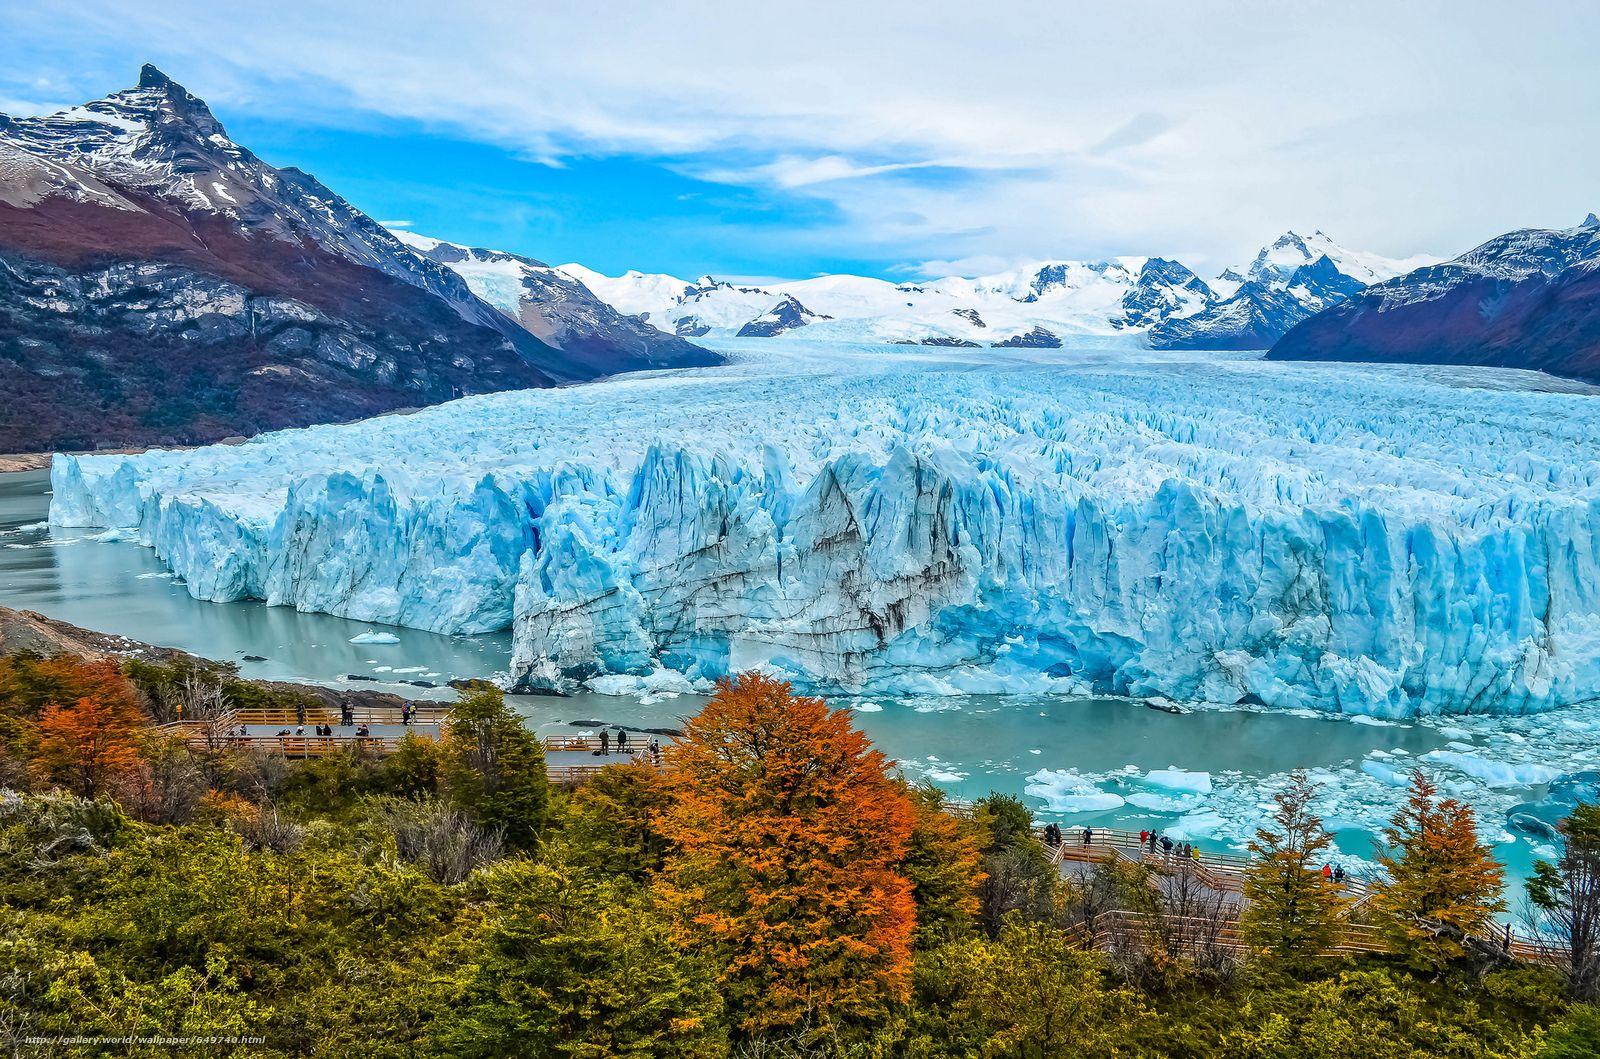 Download wallpaper Perito Moreno is a glacier located in the Los